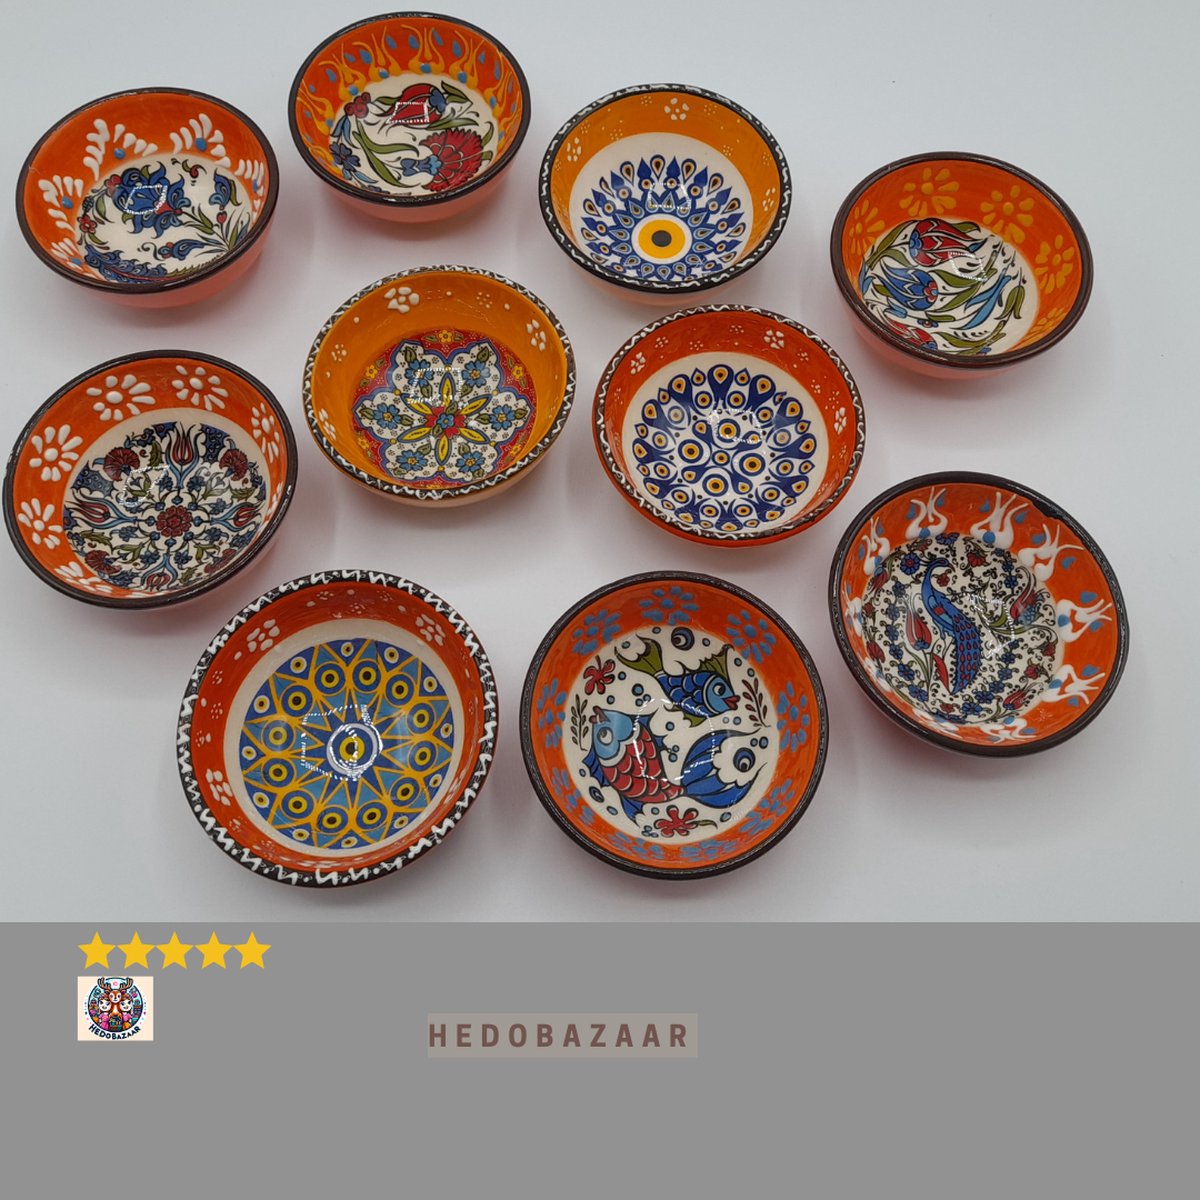 10-delige Set Handgemaakte Keramische Kommen van HeDo Bazaar: Oranje met Levendige Kleuren & Patronen, Ideaal voor Ontbijt & Snacks, 10x8x4cm, 80g - Voeg Warmte toe aan Uw Huis